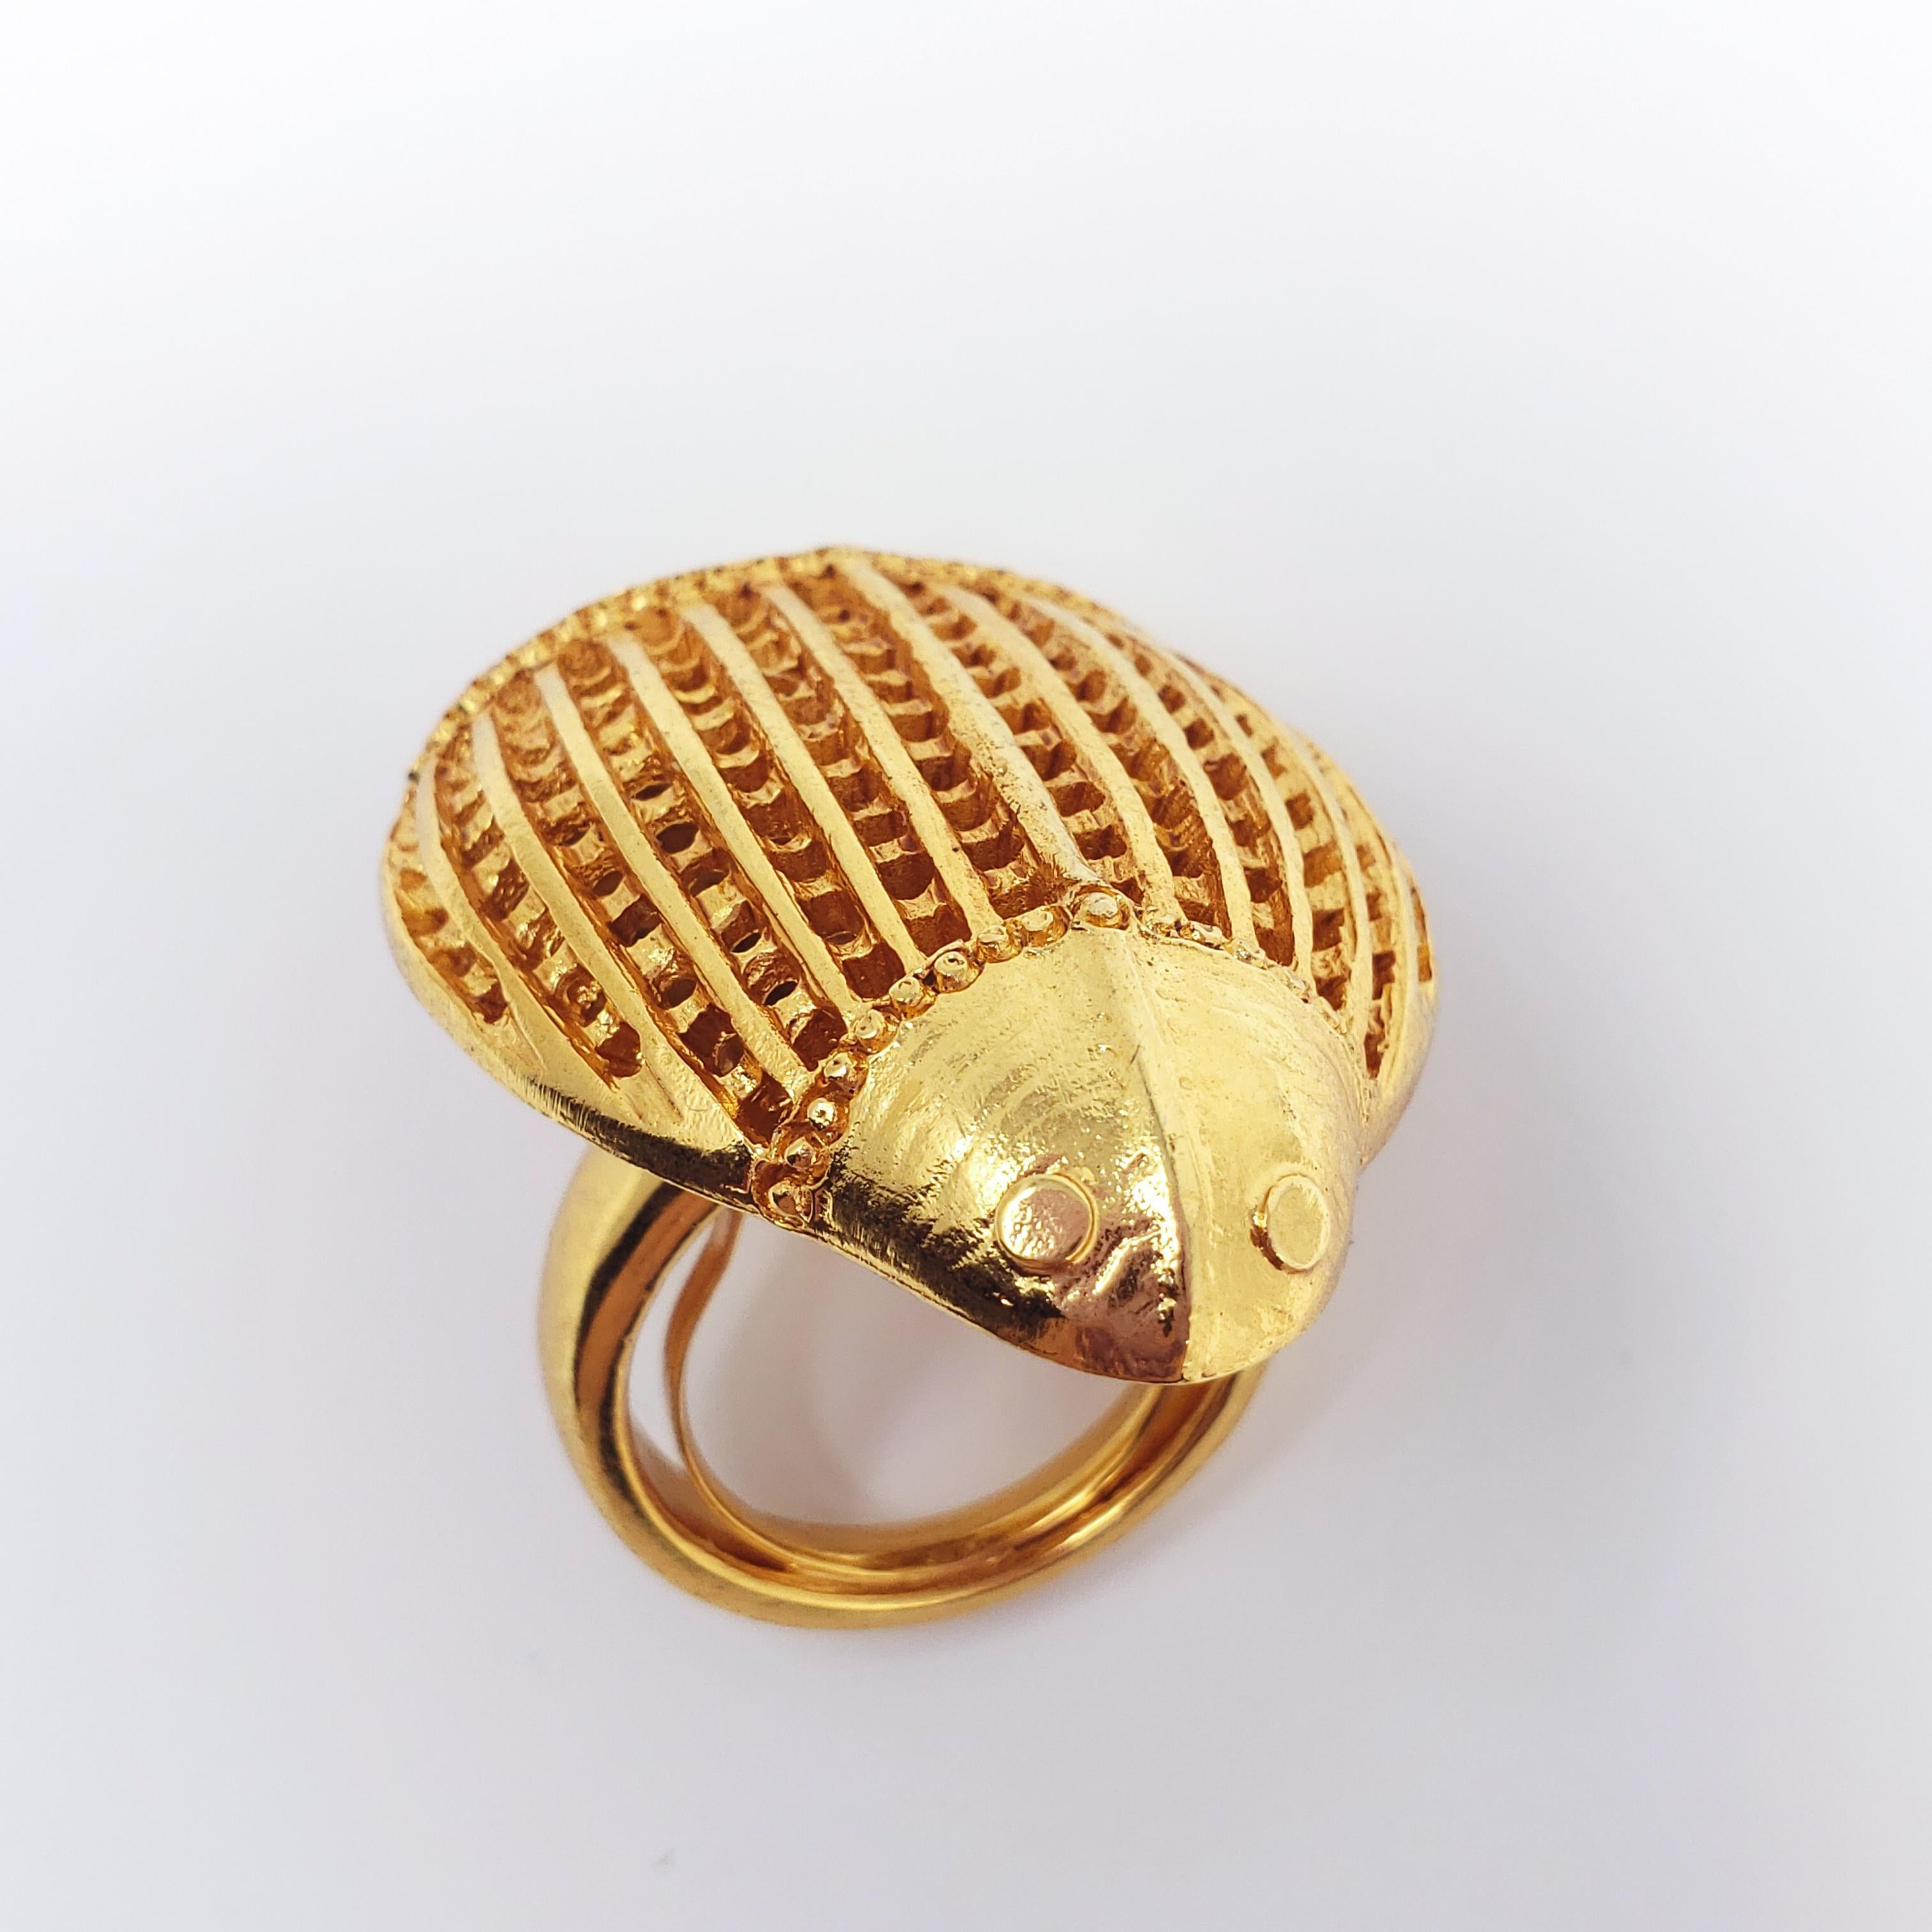 Une bague en or audacieuse signée Oscar de la Renta, avec un grand motif de scarabée. Le dos du scarabée est composé d'un motif en maille pour une touche unique.

Taille : Ajustable, tailles US 4-8
Dimensions du scarabée : 4.1 x 3.2 pouces
Poinçons